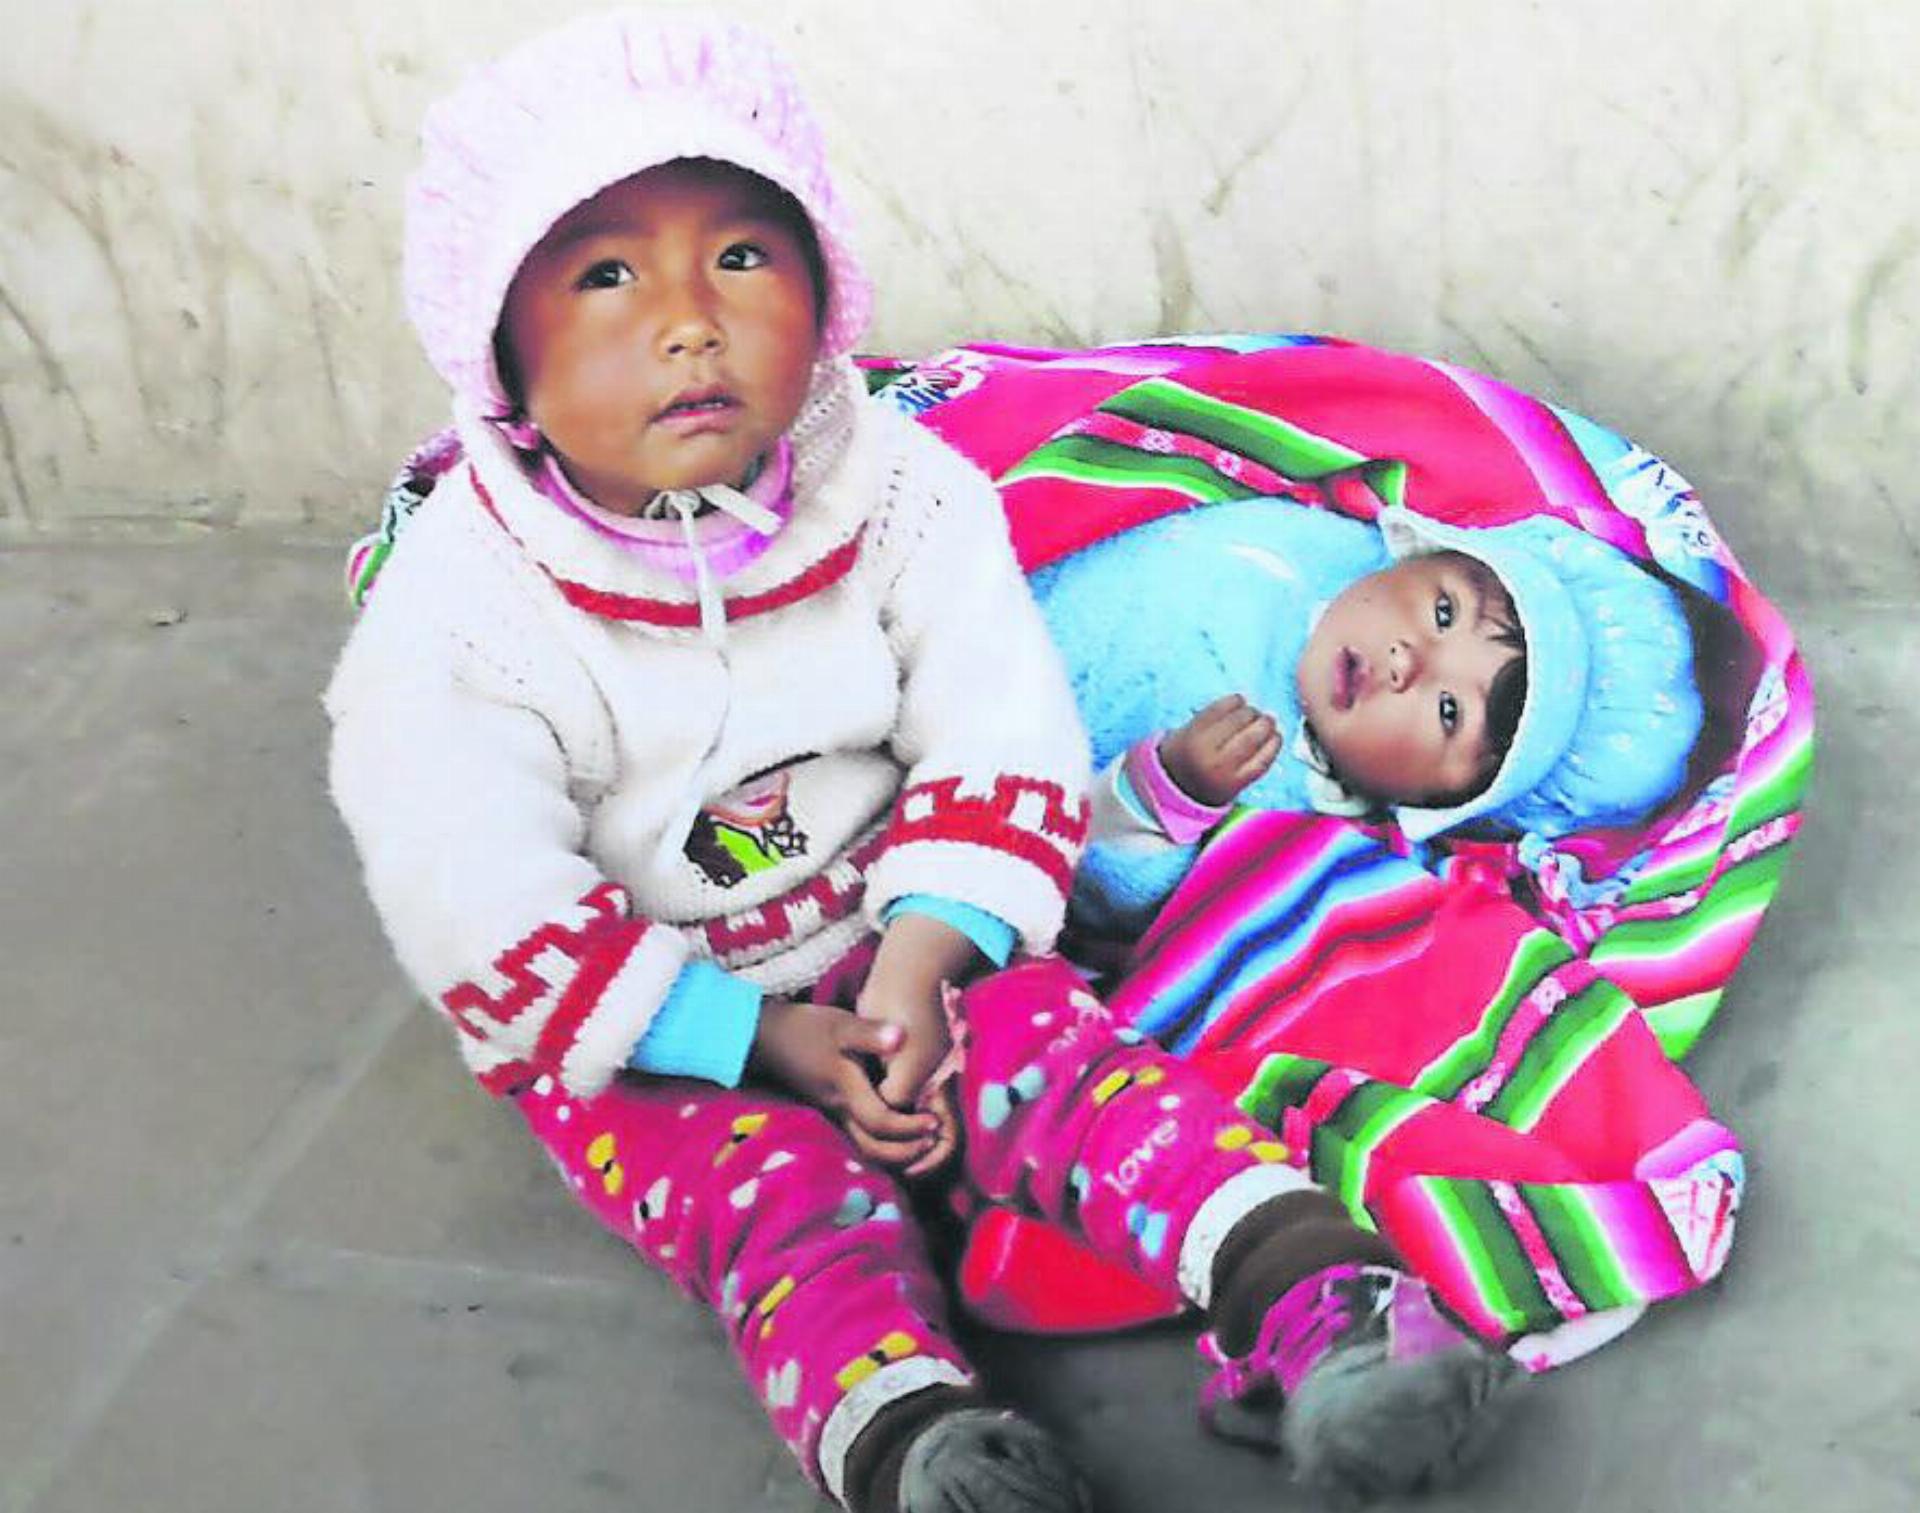 Strassenkinder aus Bolivien. FOTO: TRES SOLES